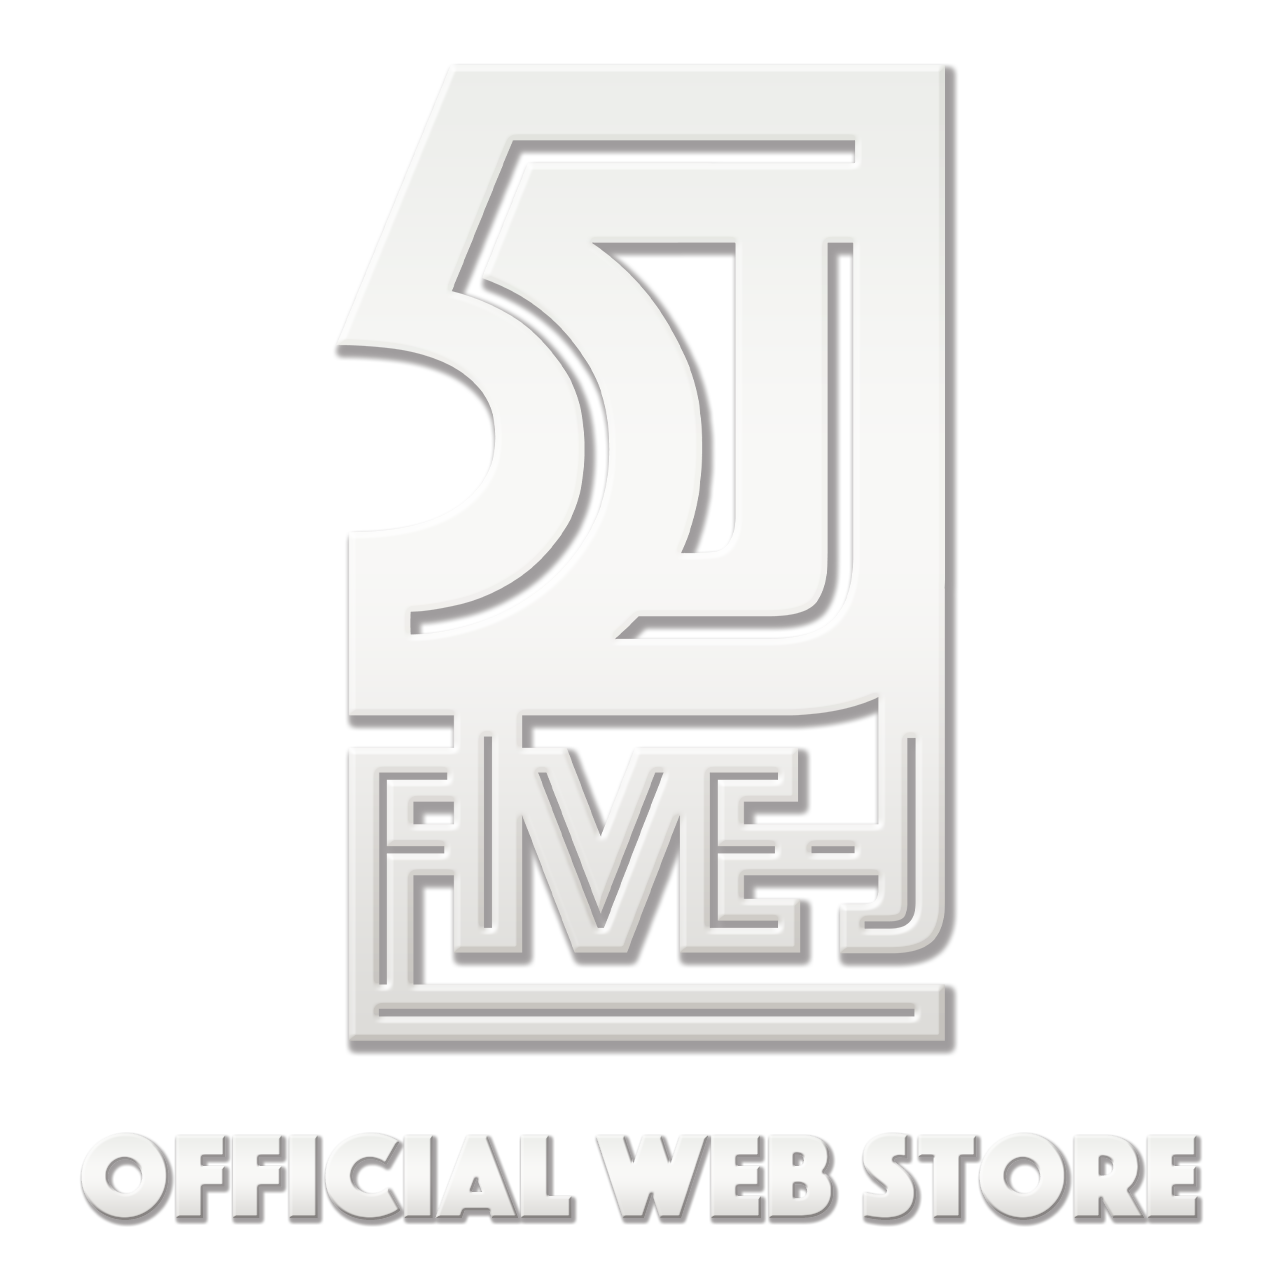 5J ~Five J~ official web store